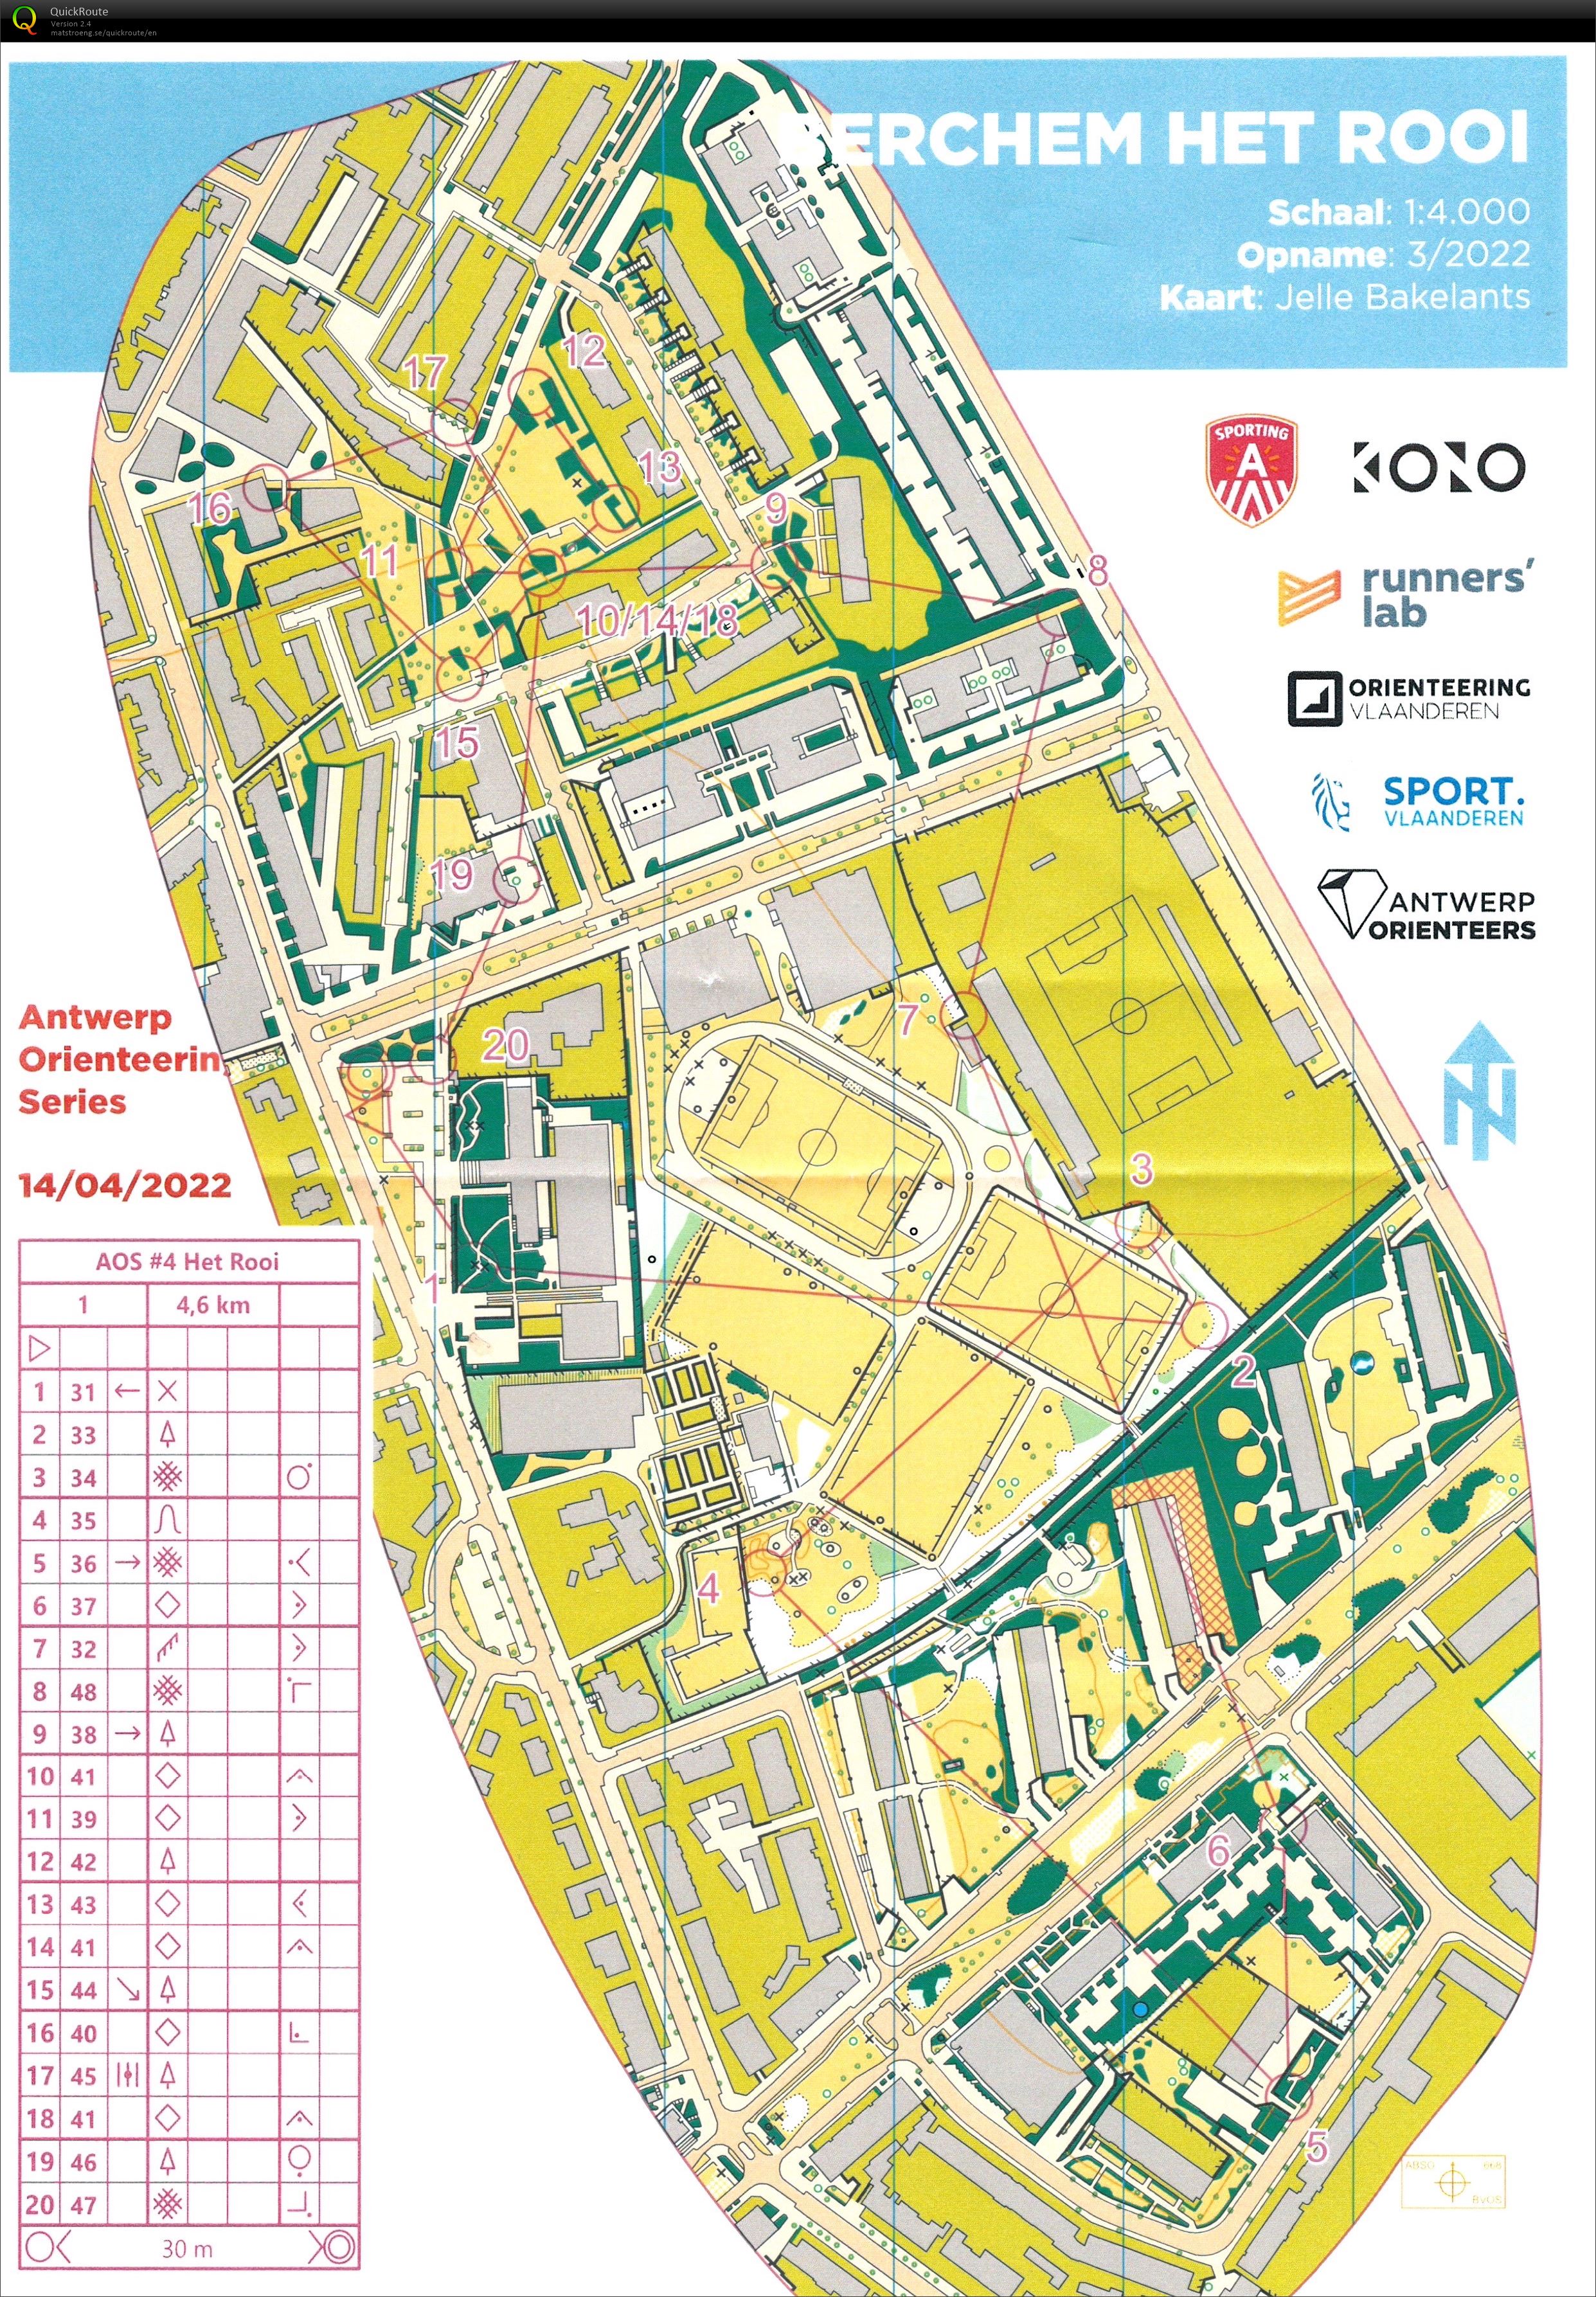 Antwerp Orienteering Series - Berchem - Het Rooi - 5K (2022-04-14)